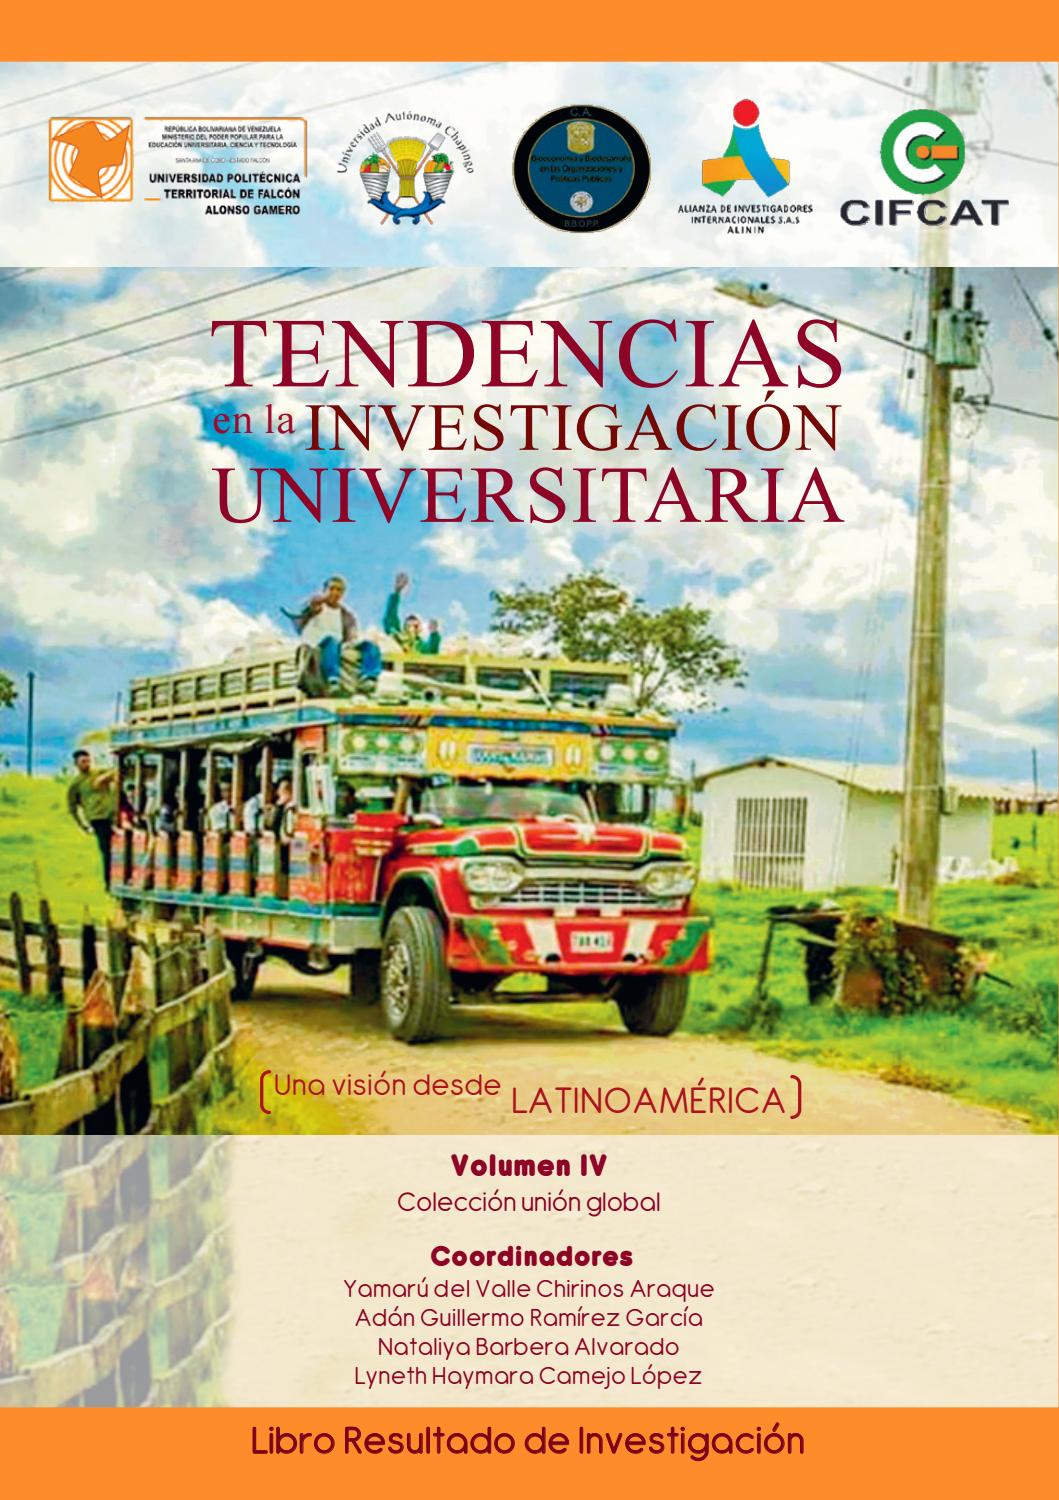 Imagen de portada del libro Tendencias en la Investigación Universitaria. Una visión desde Latinoamérica. Vol. IV